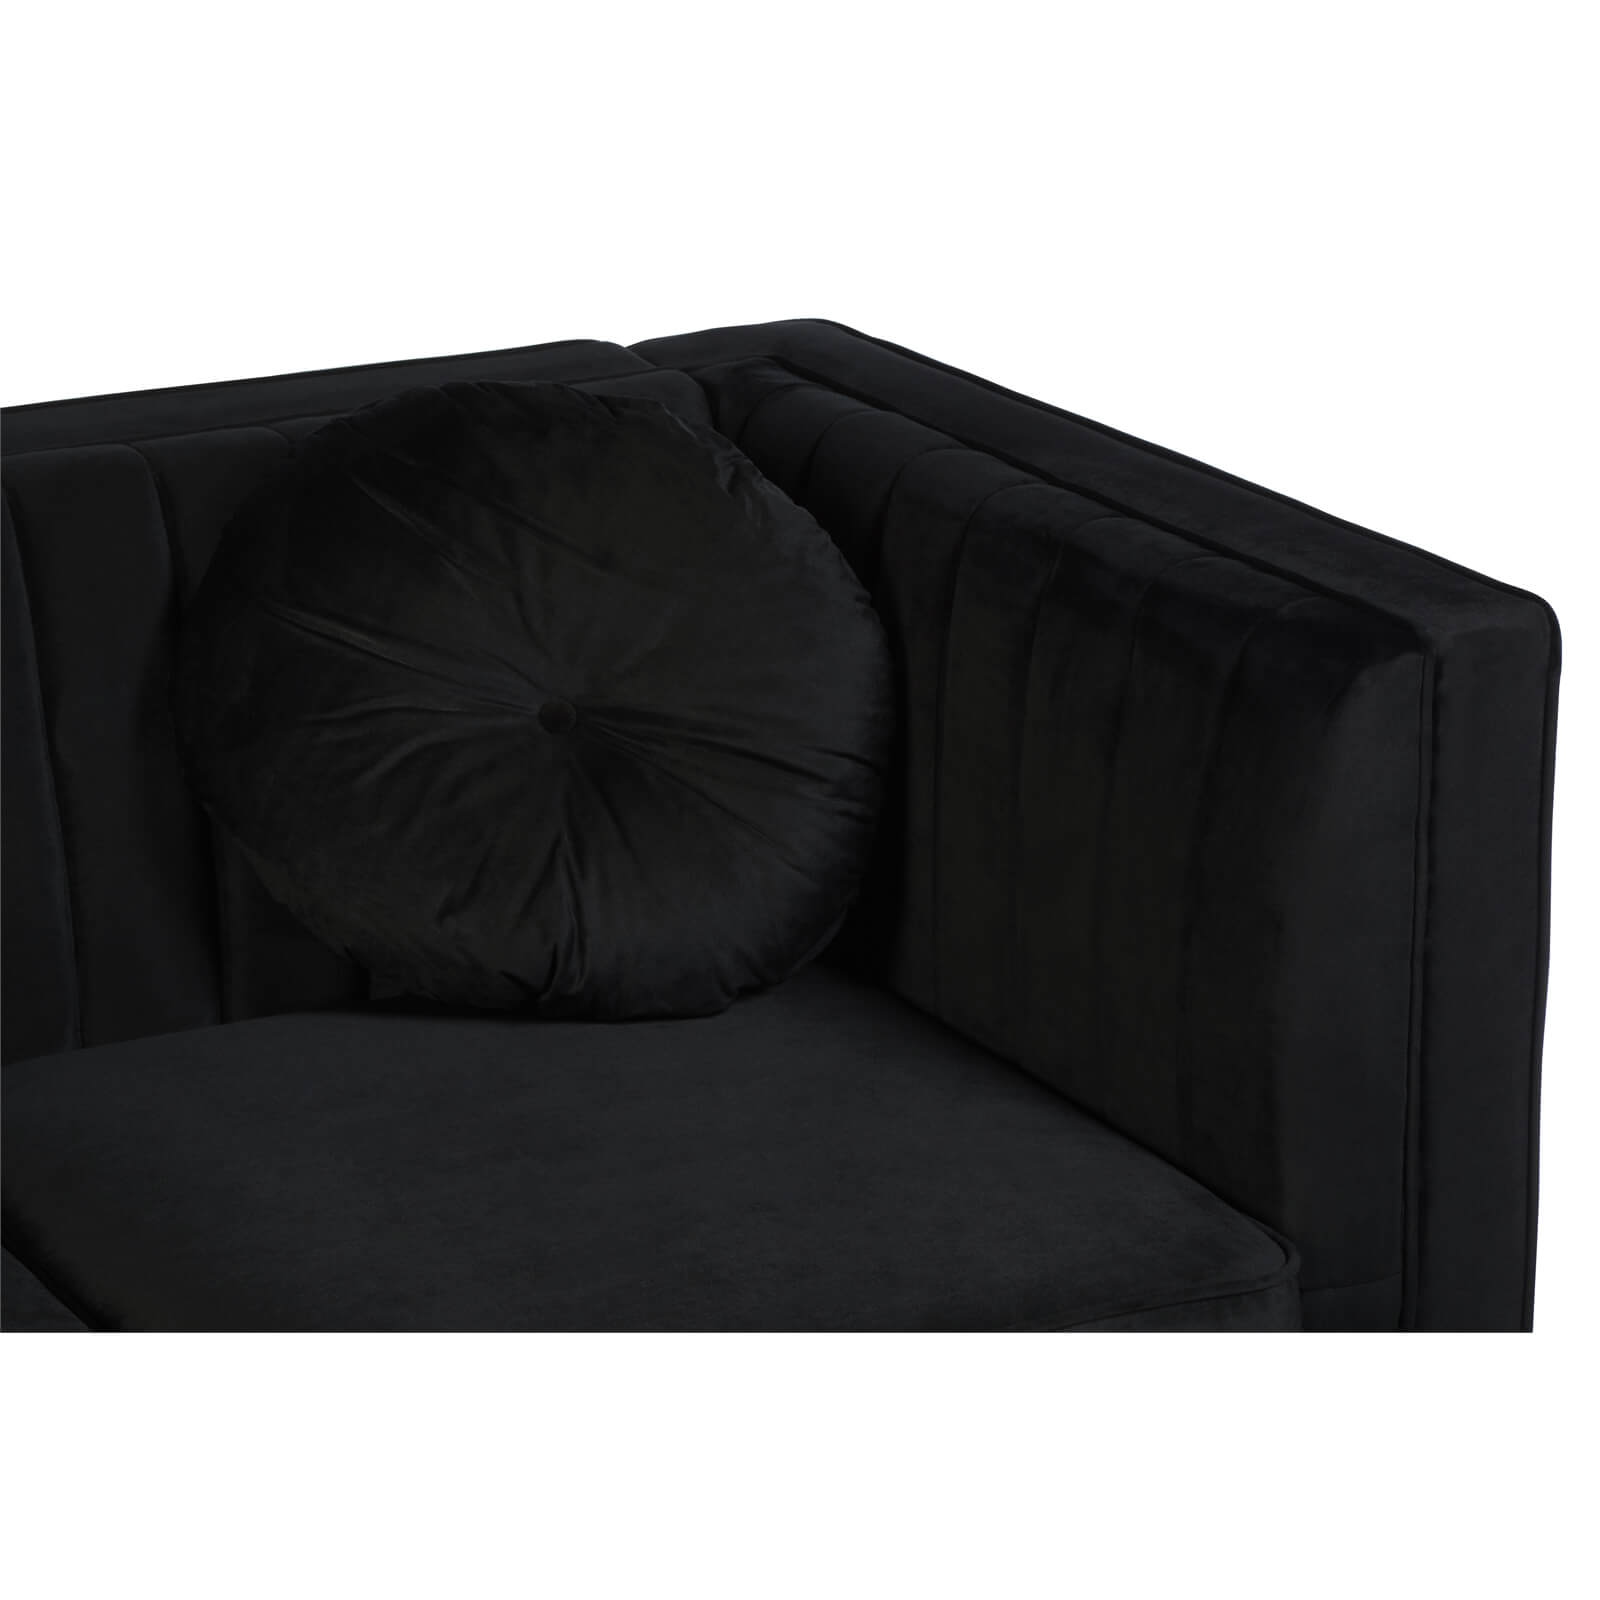 Farah 2 Seat Velvet Sofa - Black